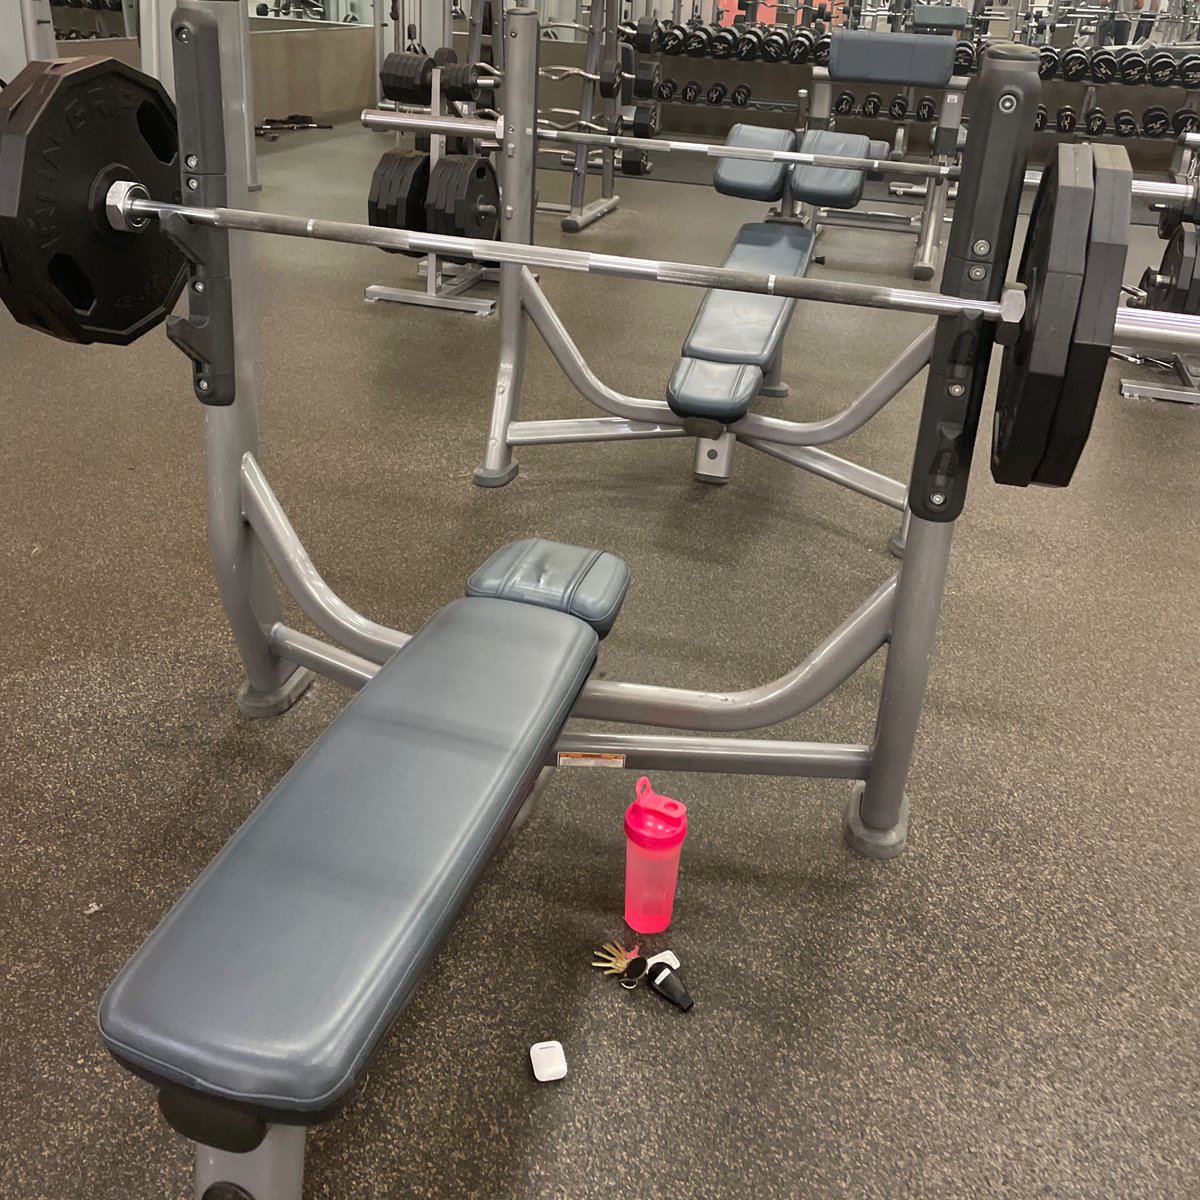 Quiet Gym 👌🏼😌

#SpringBreak24